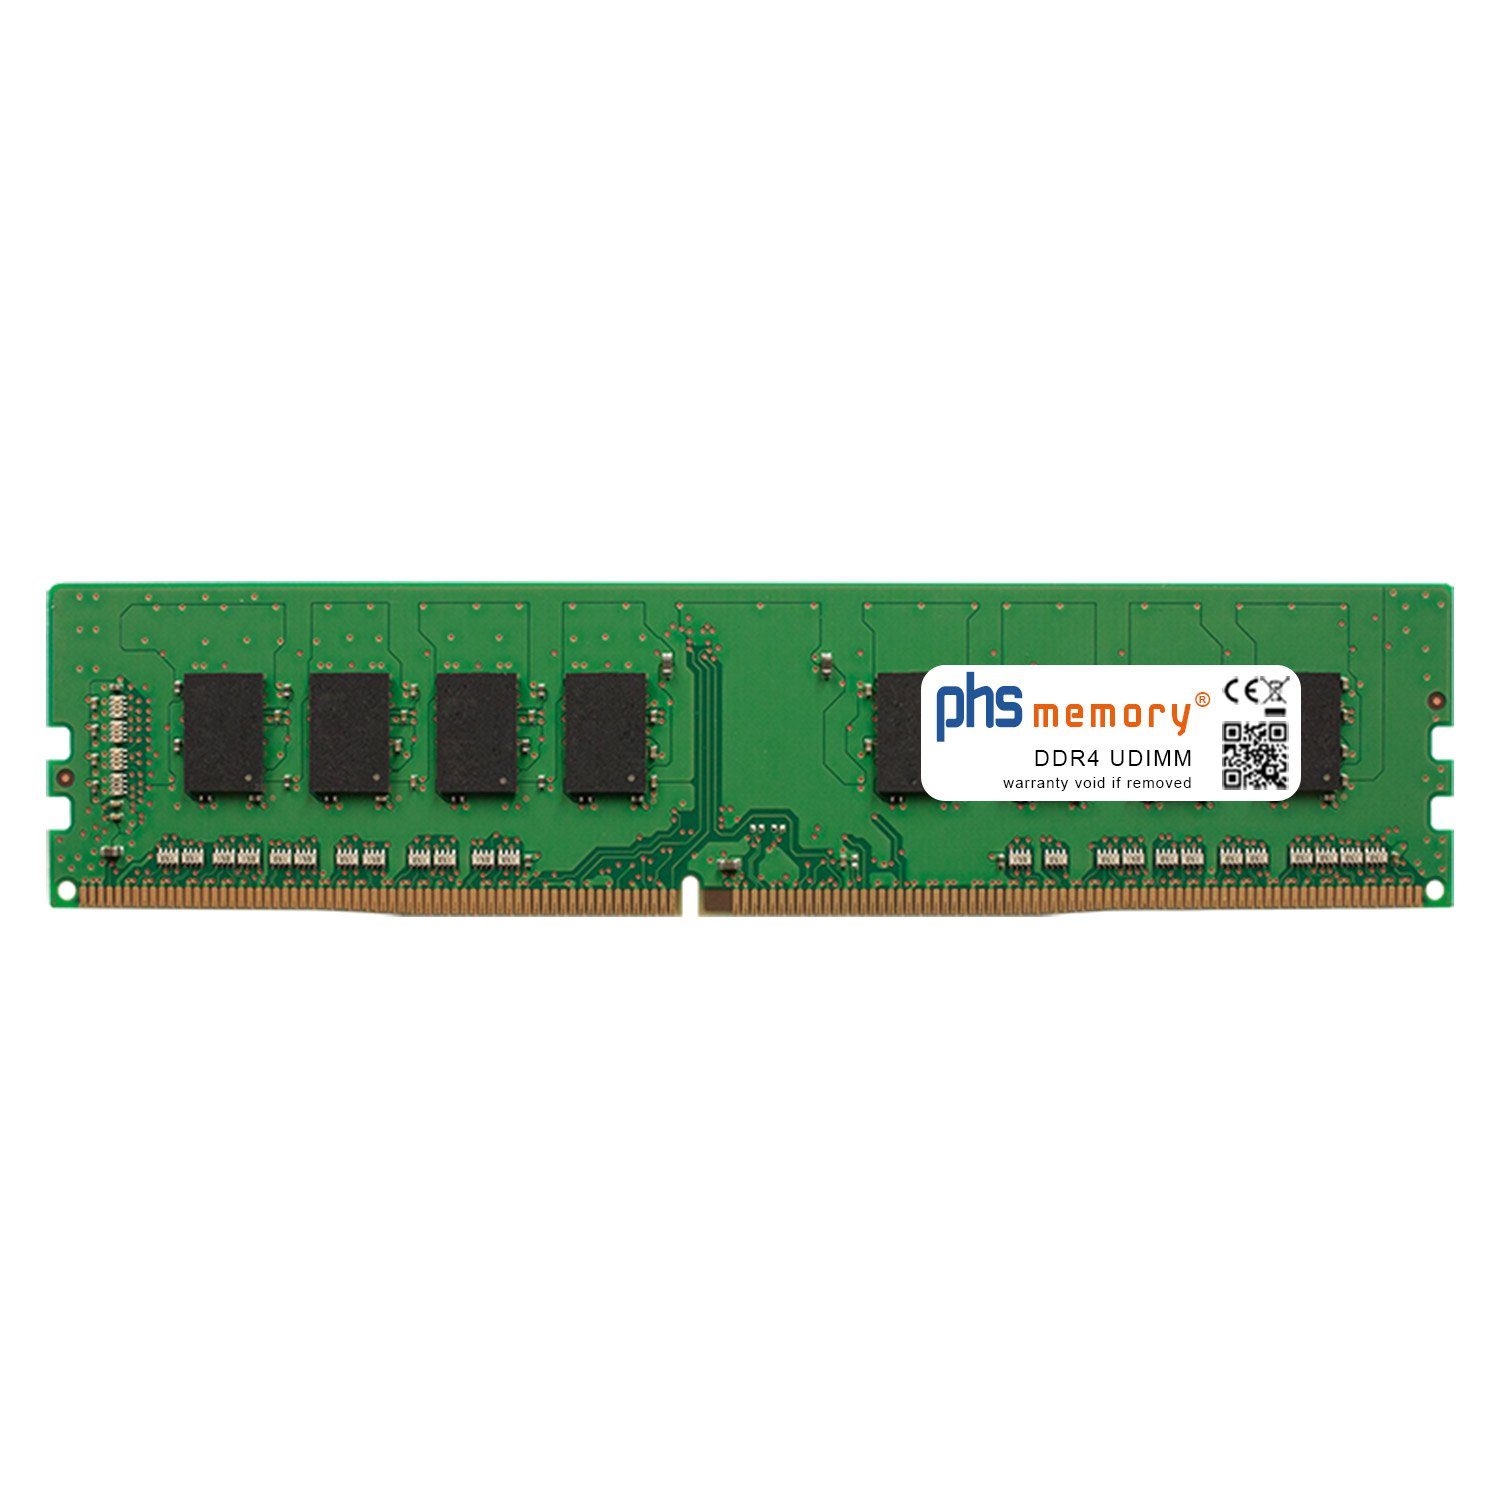 PHS-memory RAM für Captiva Advanced Gaming R70-305 Arbeitsspeicher